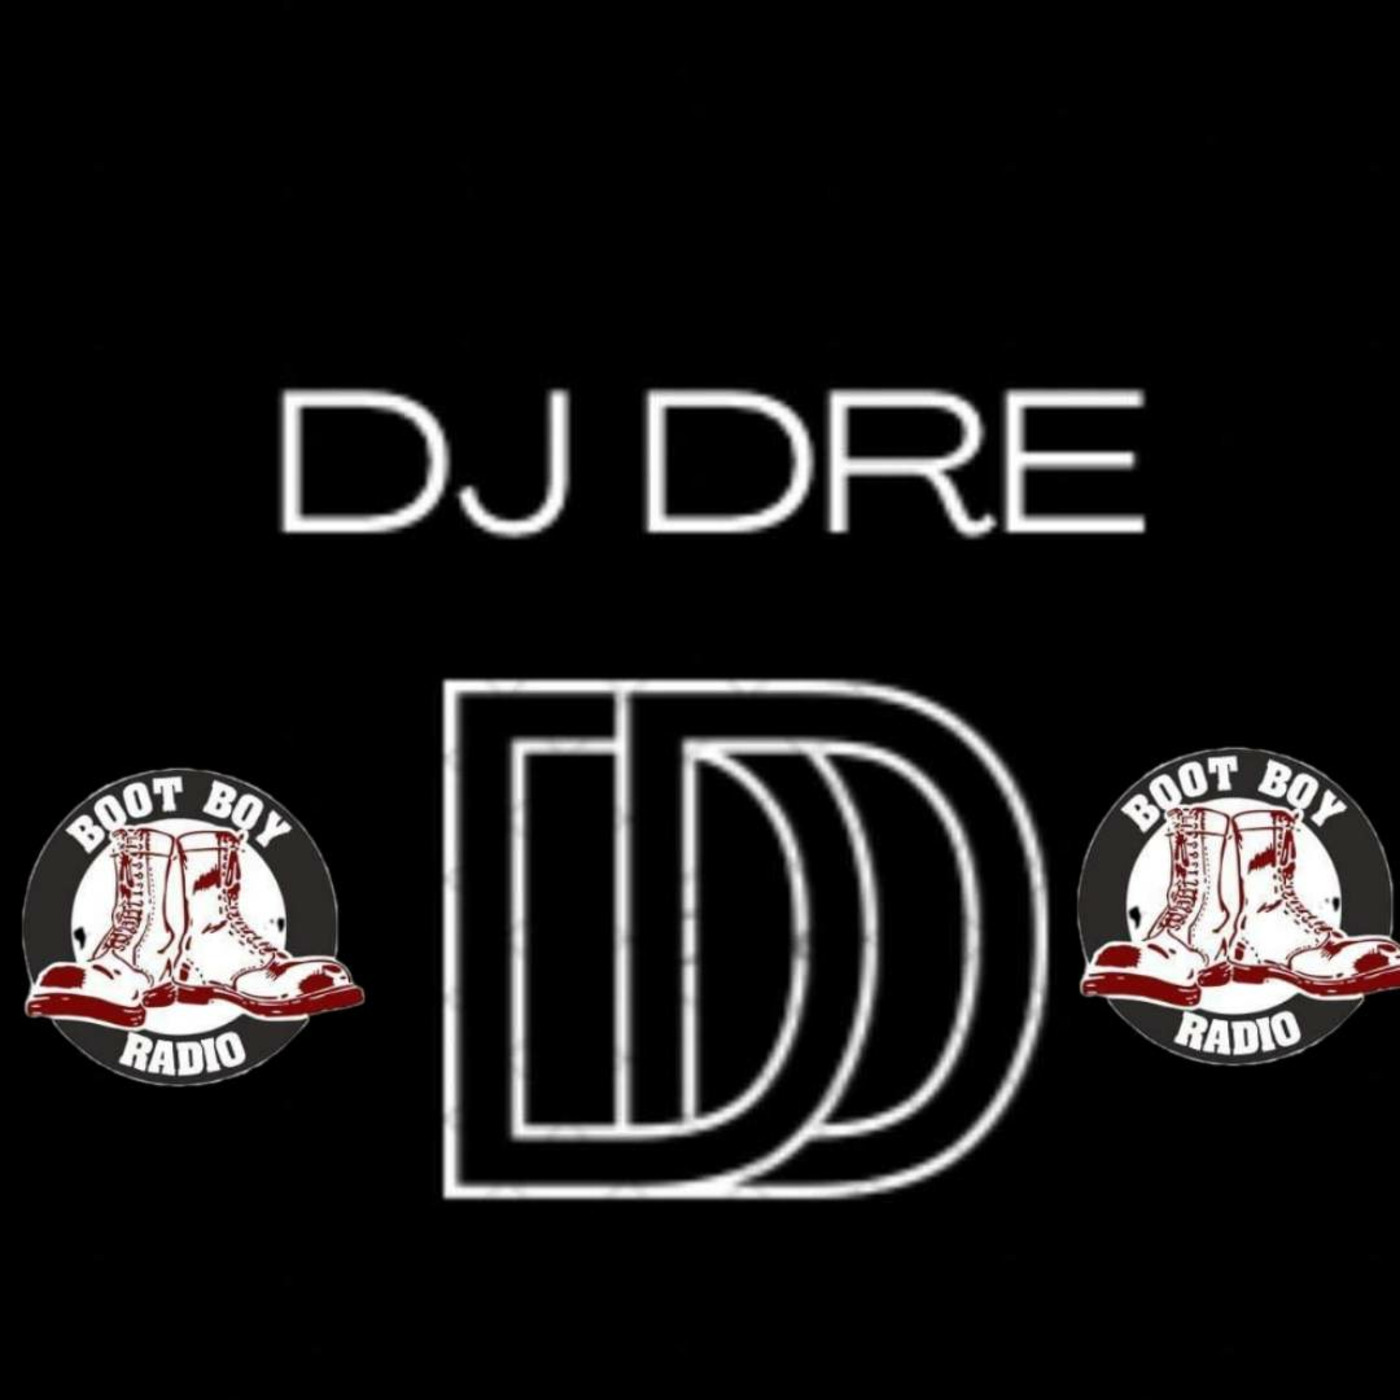 Episode 2718: Dj Dre Show 1 2022 On www.bootboyradio.net